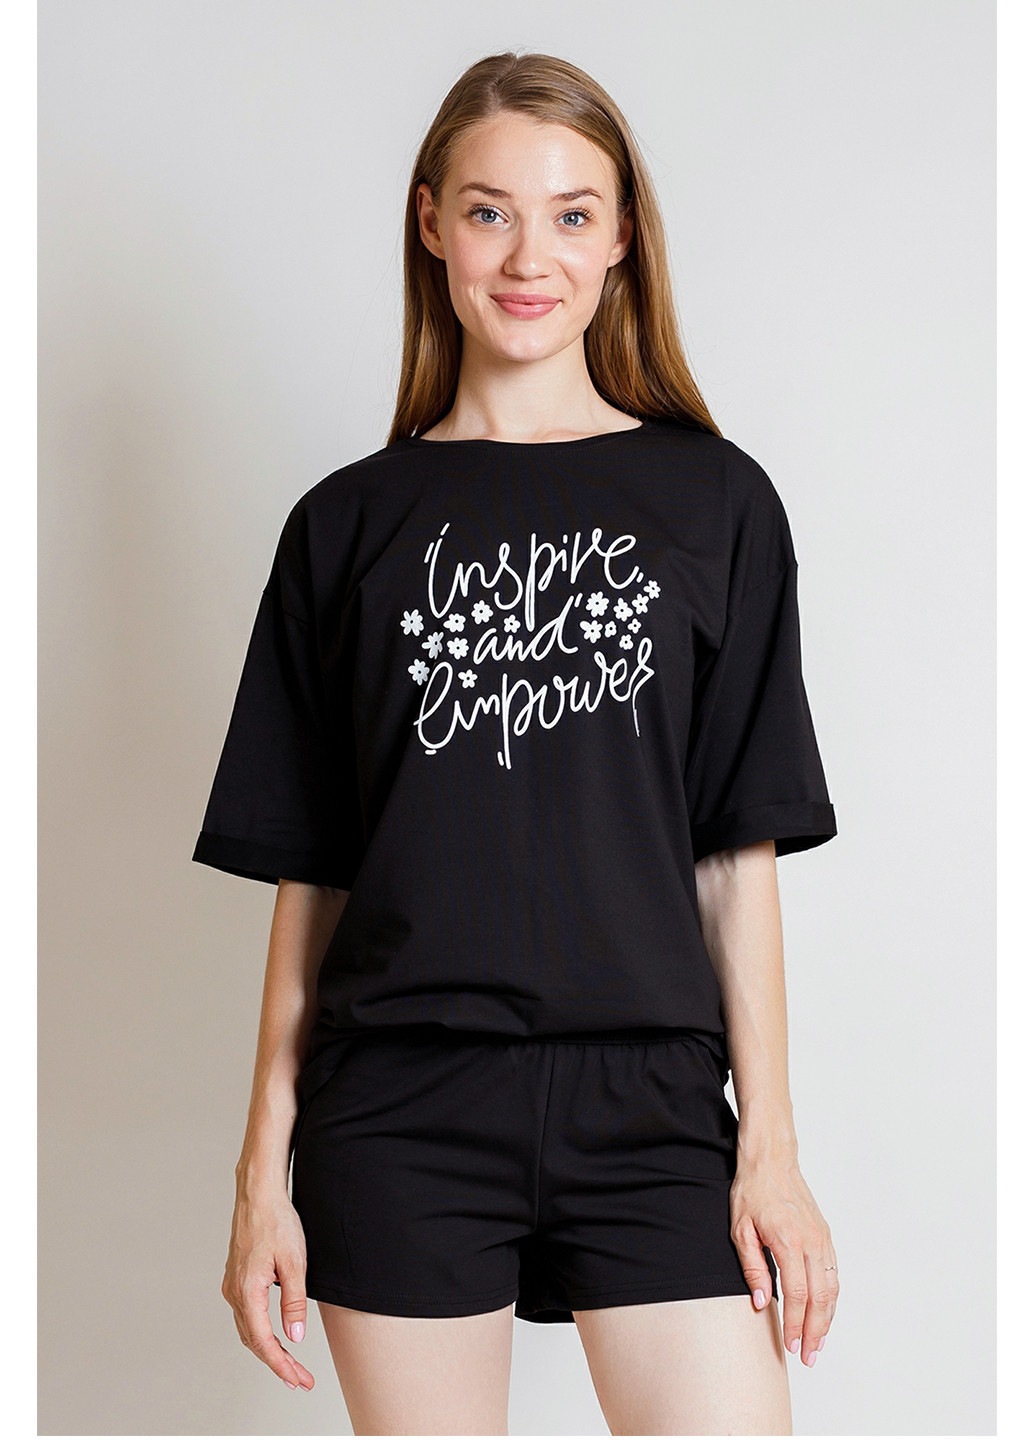 Черная всесезон комплек женский (футболка и шорты) футболка + шорты Kosta 2626-2